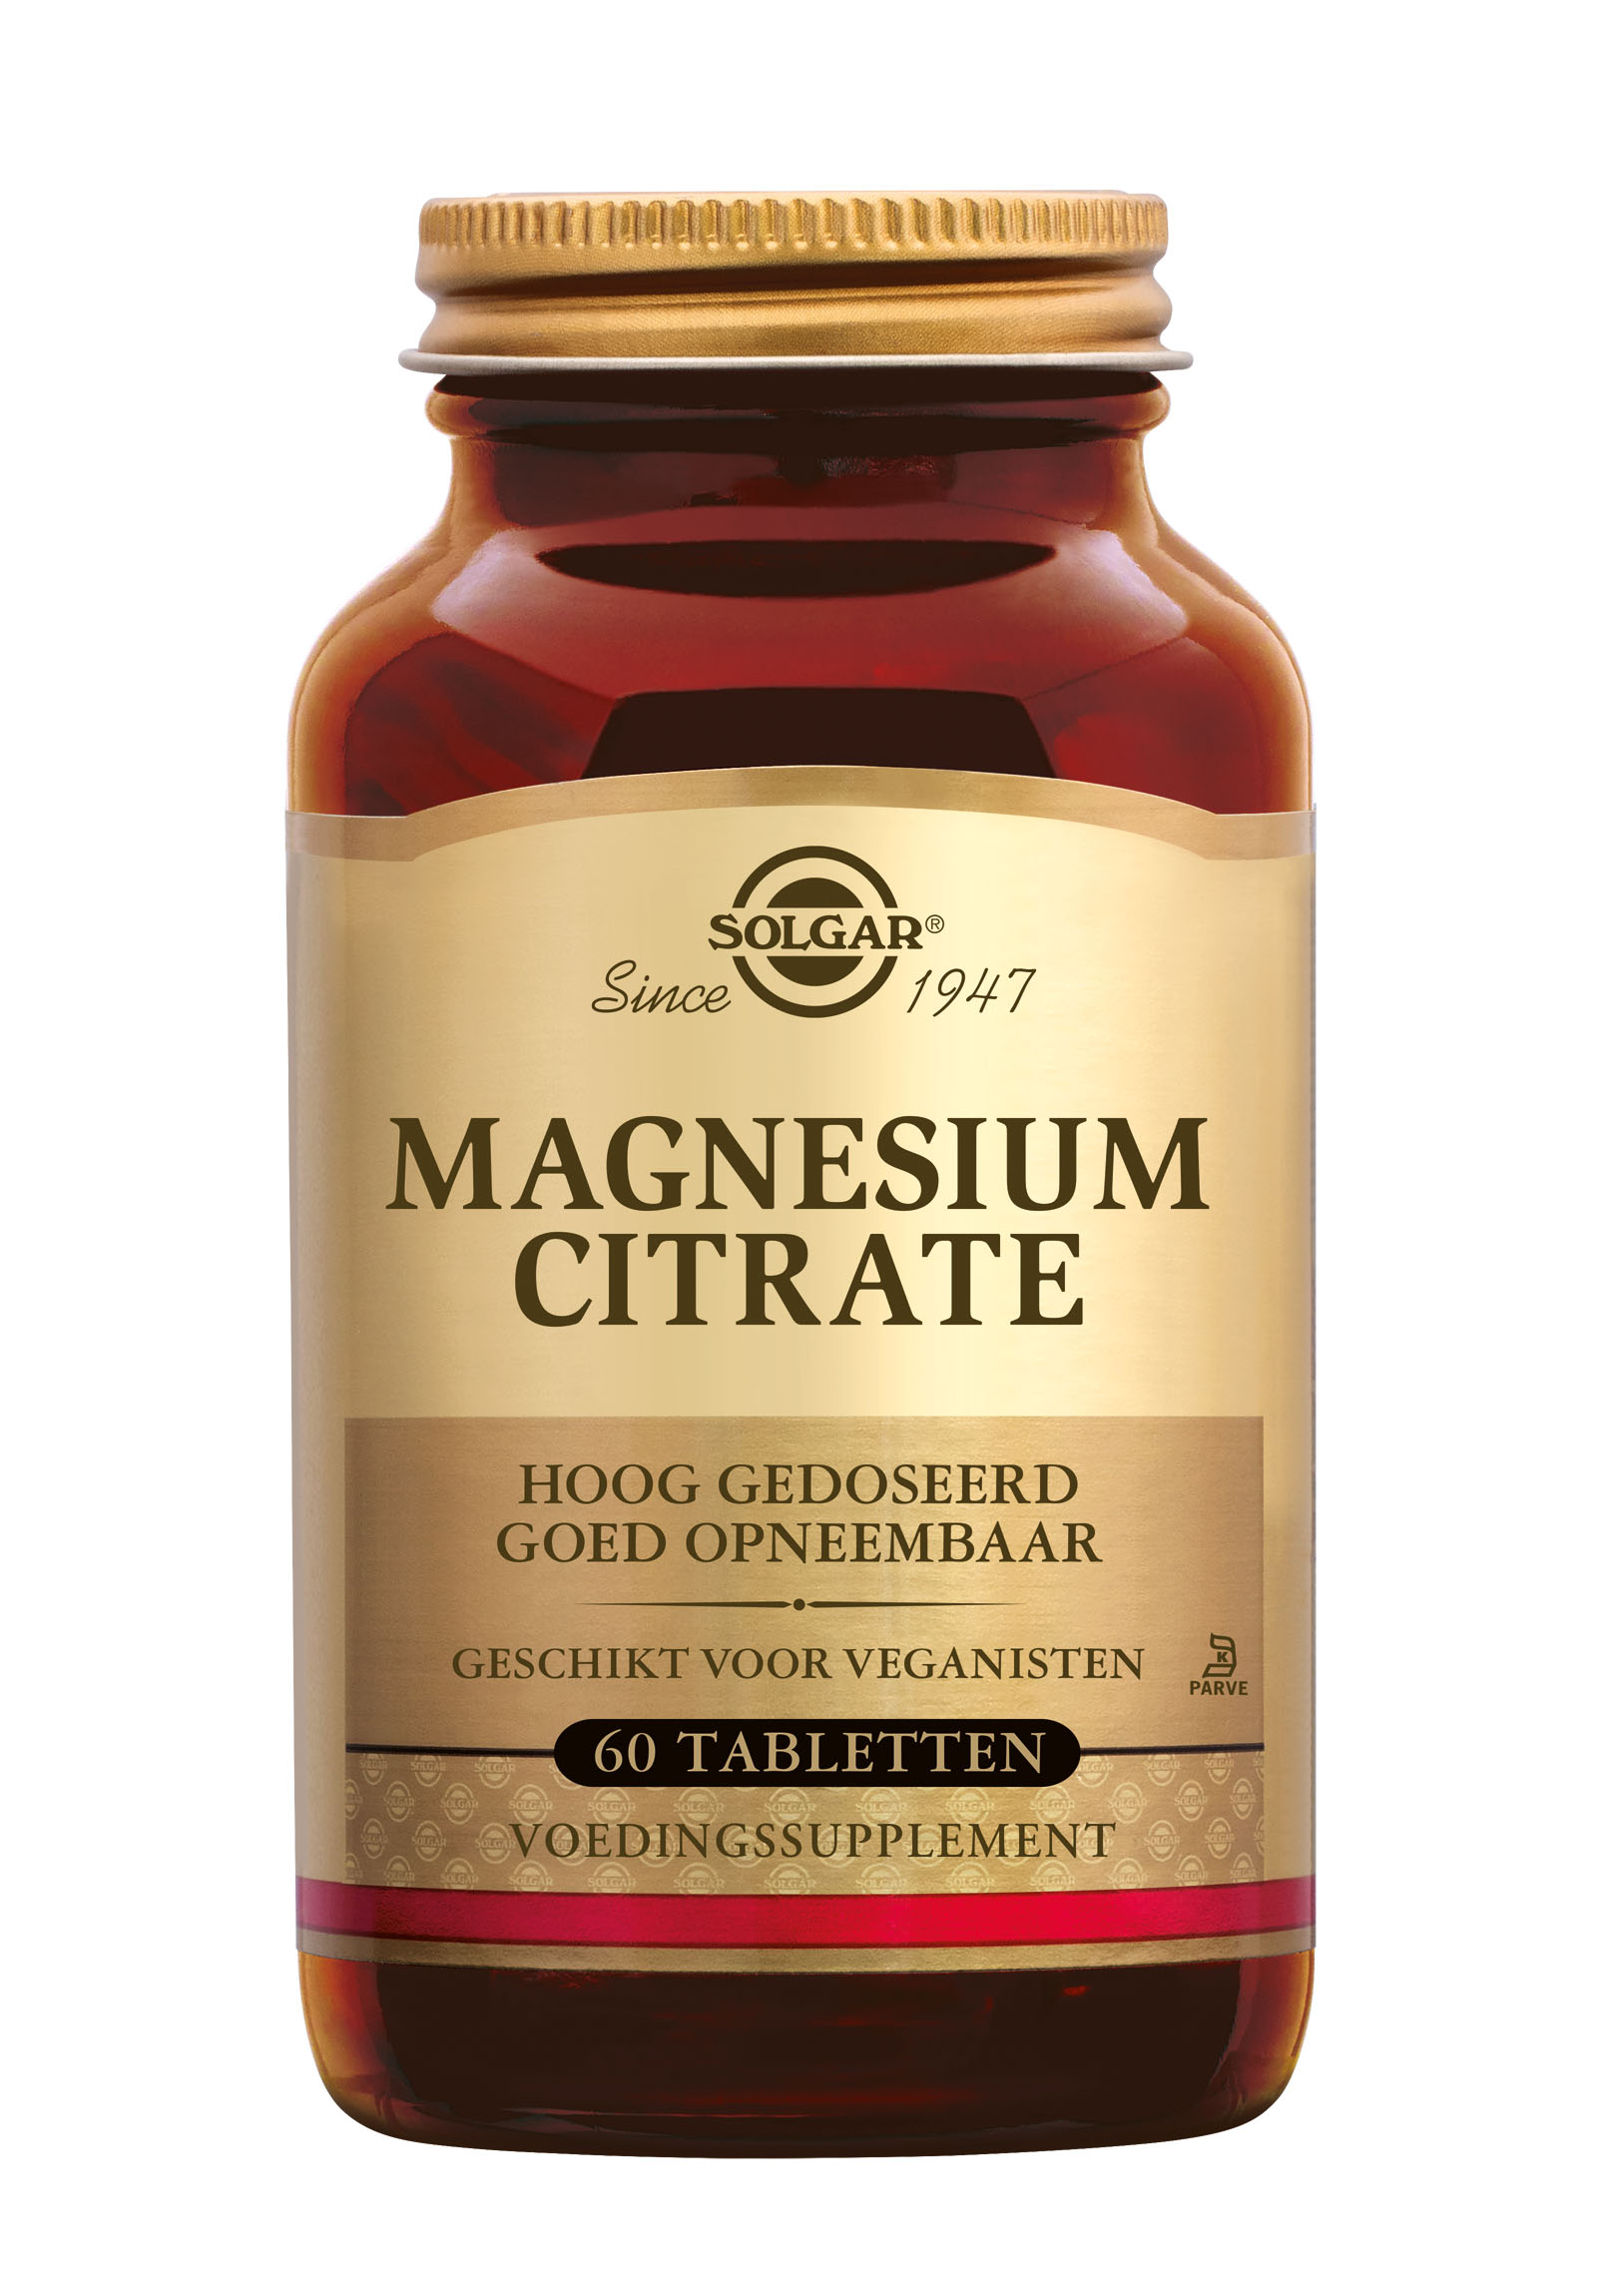 Solgar Magnesium Citrate (60 stuks)